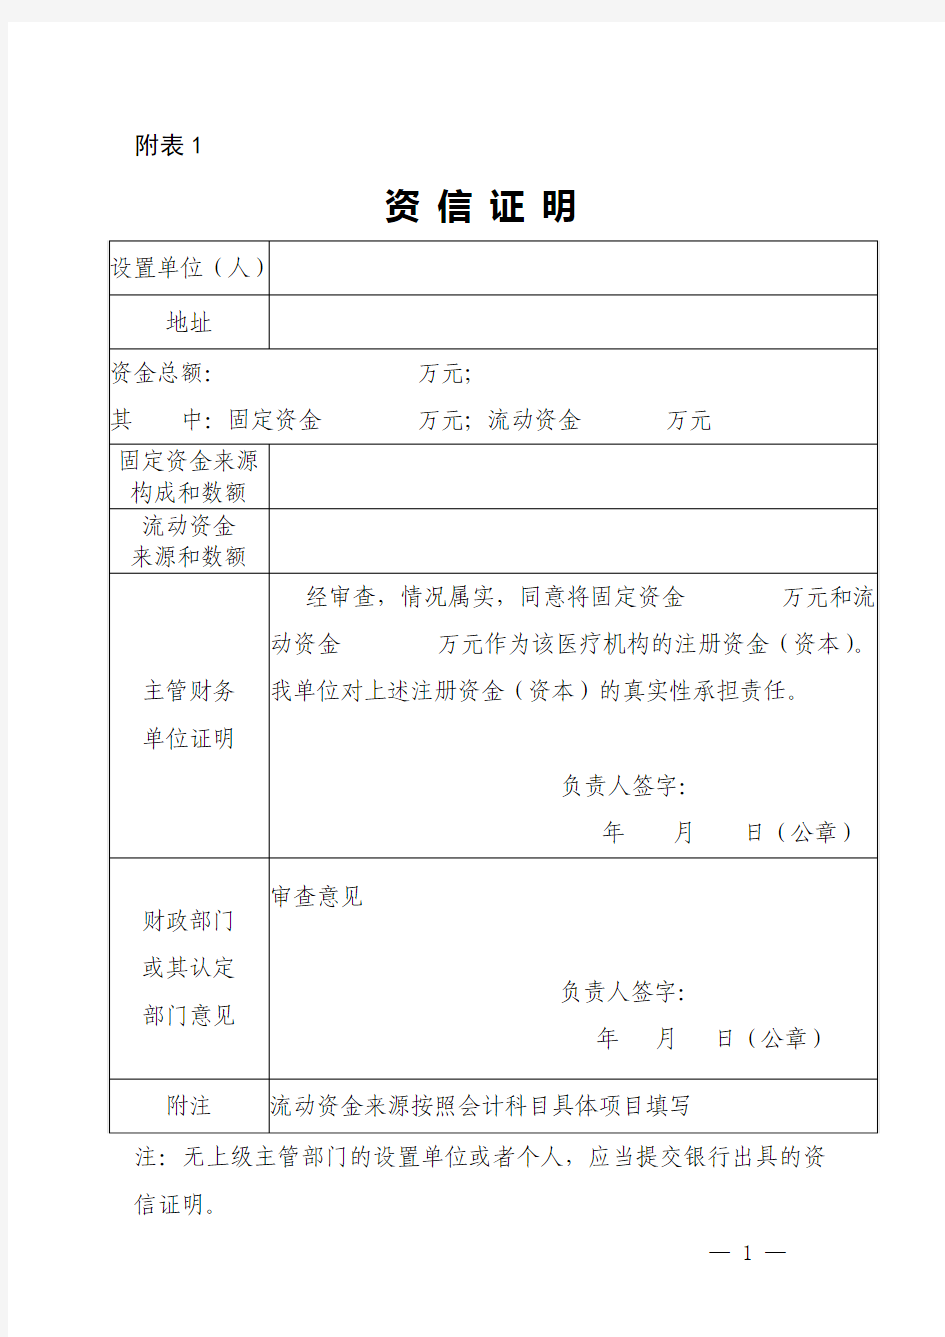 山东省卫生厅医疗机构行政许可办理程序附件表格